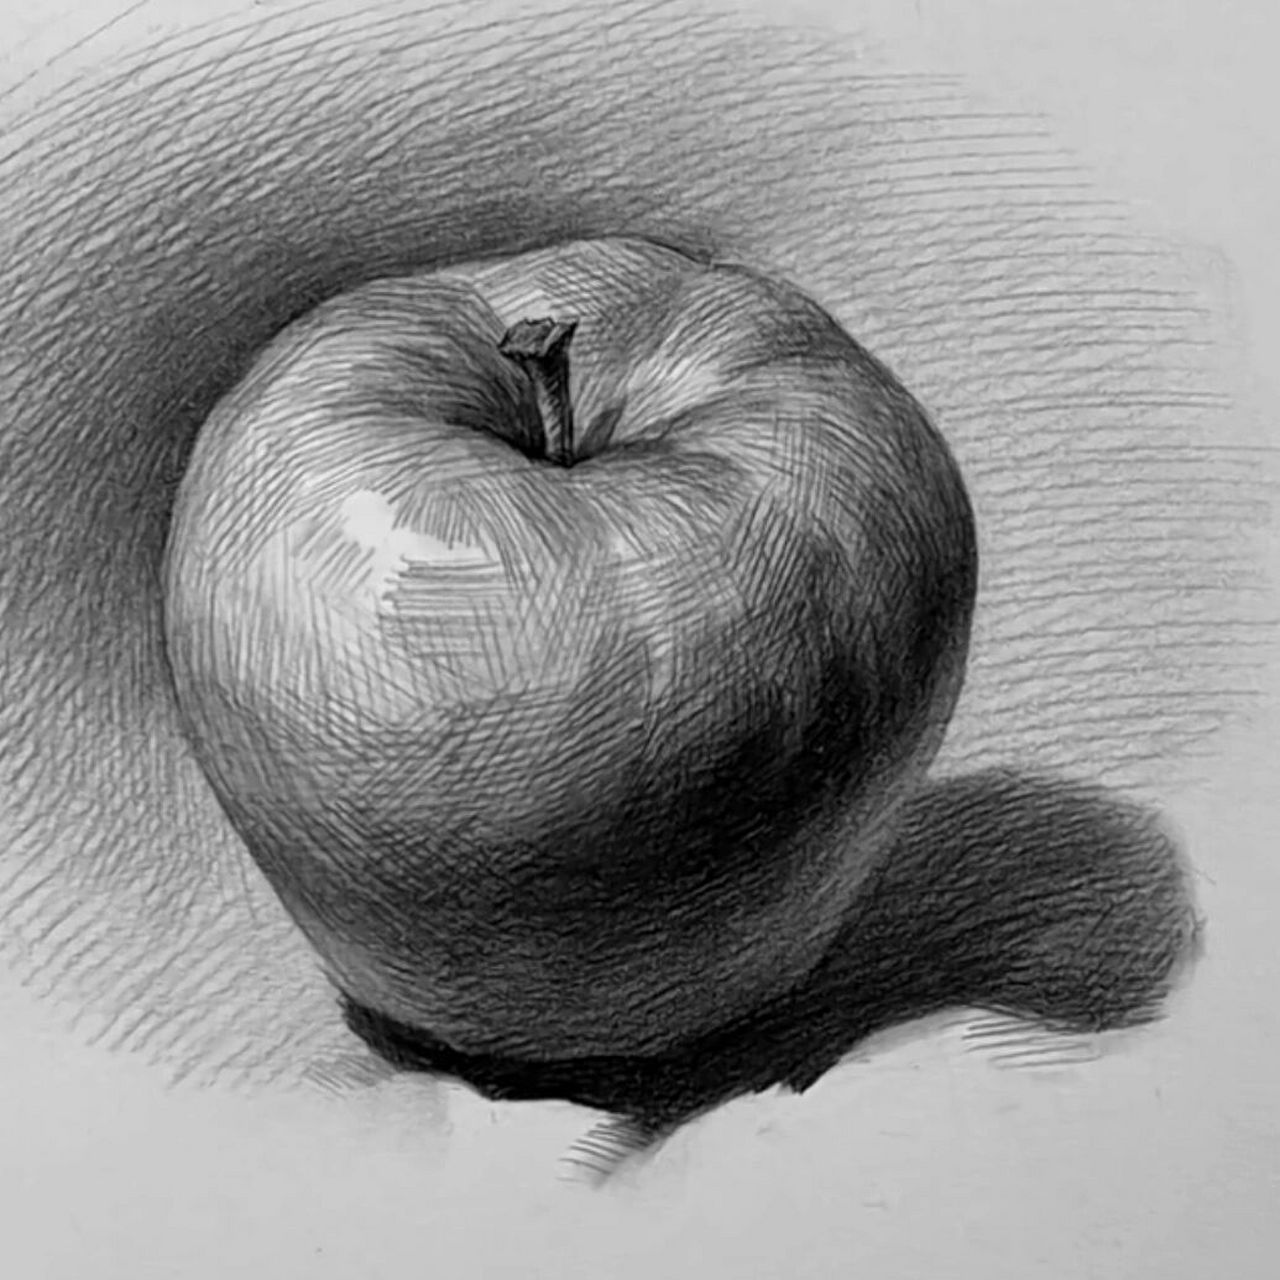 苹果素描躺着图片